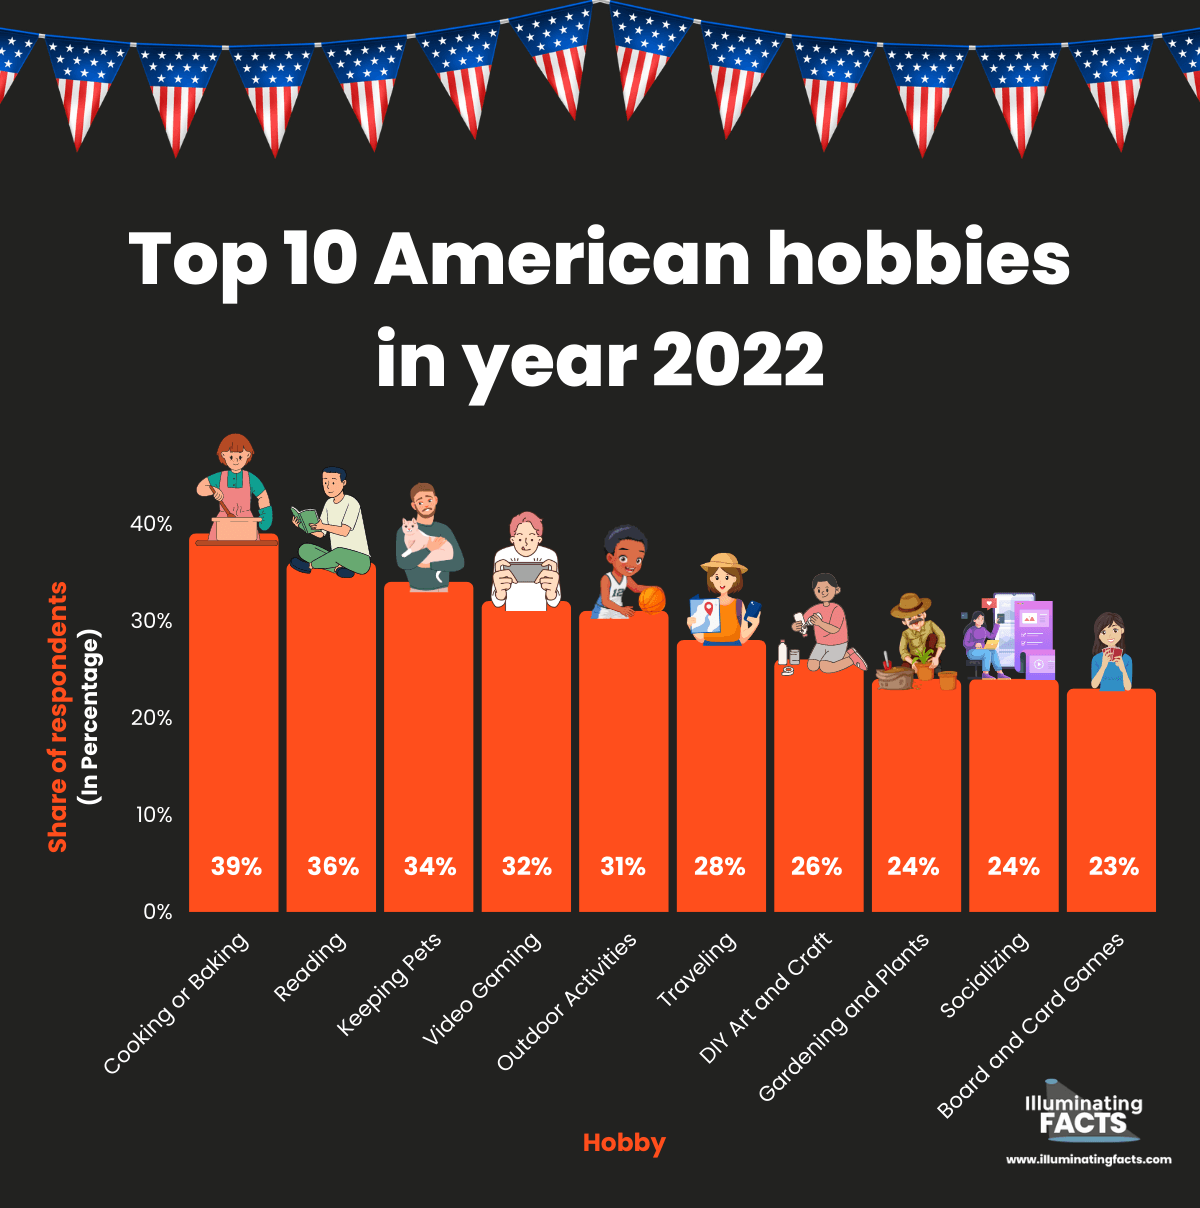 Top 10 American hobbies in year 2022